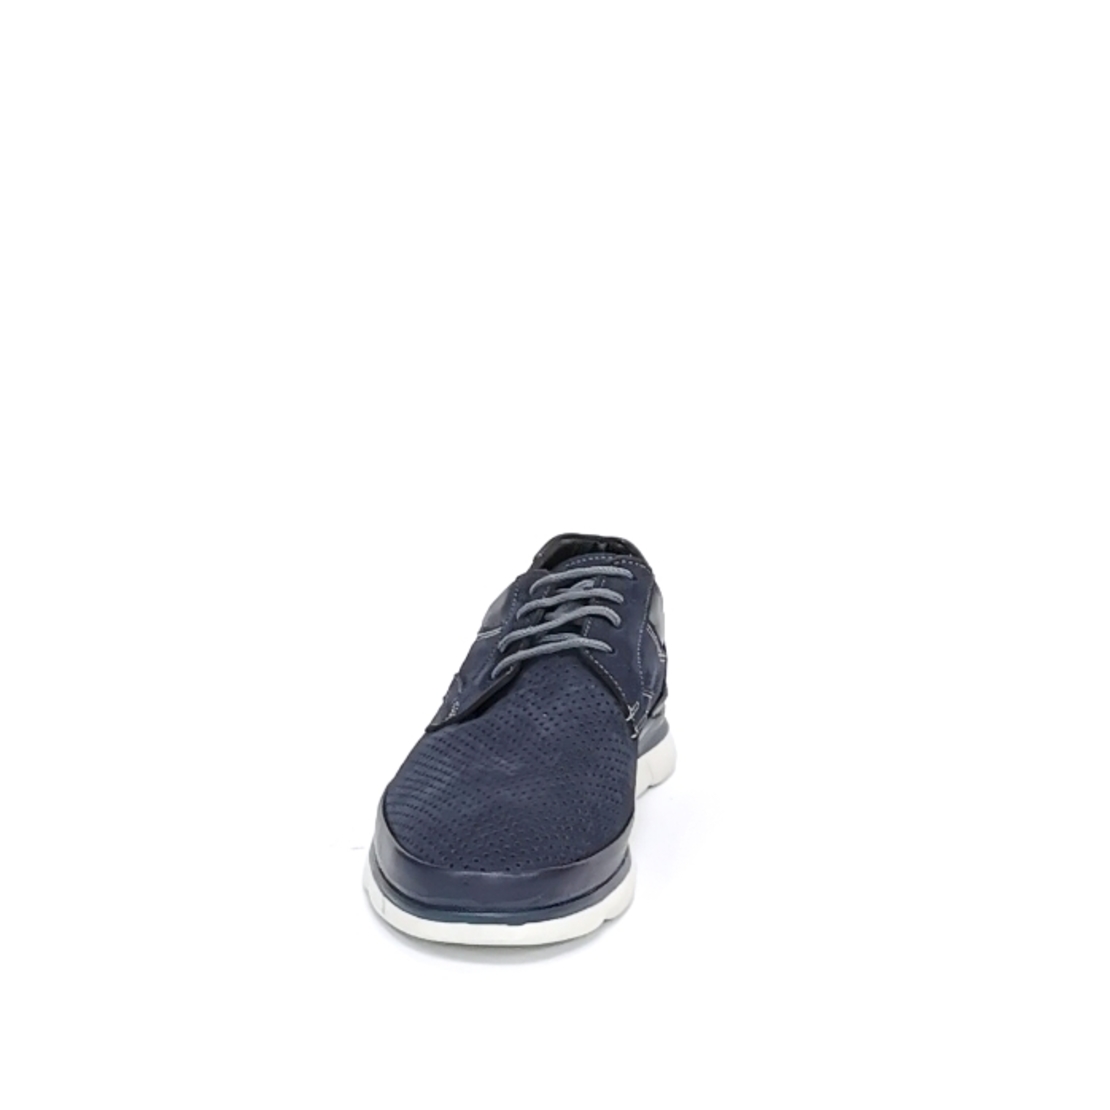 Мужская повседневная обувь из натуральной кожи цвета синий / 71023